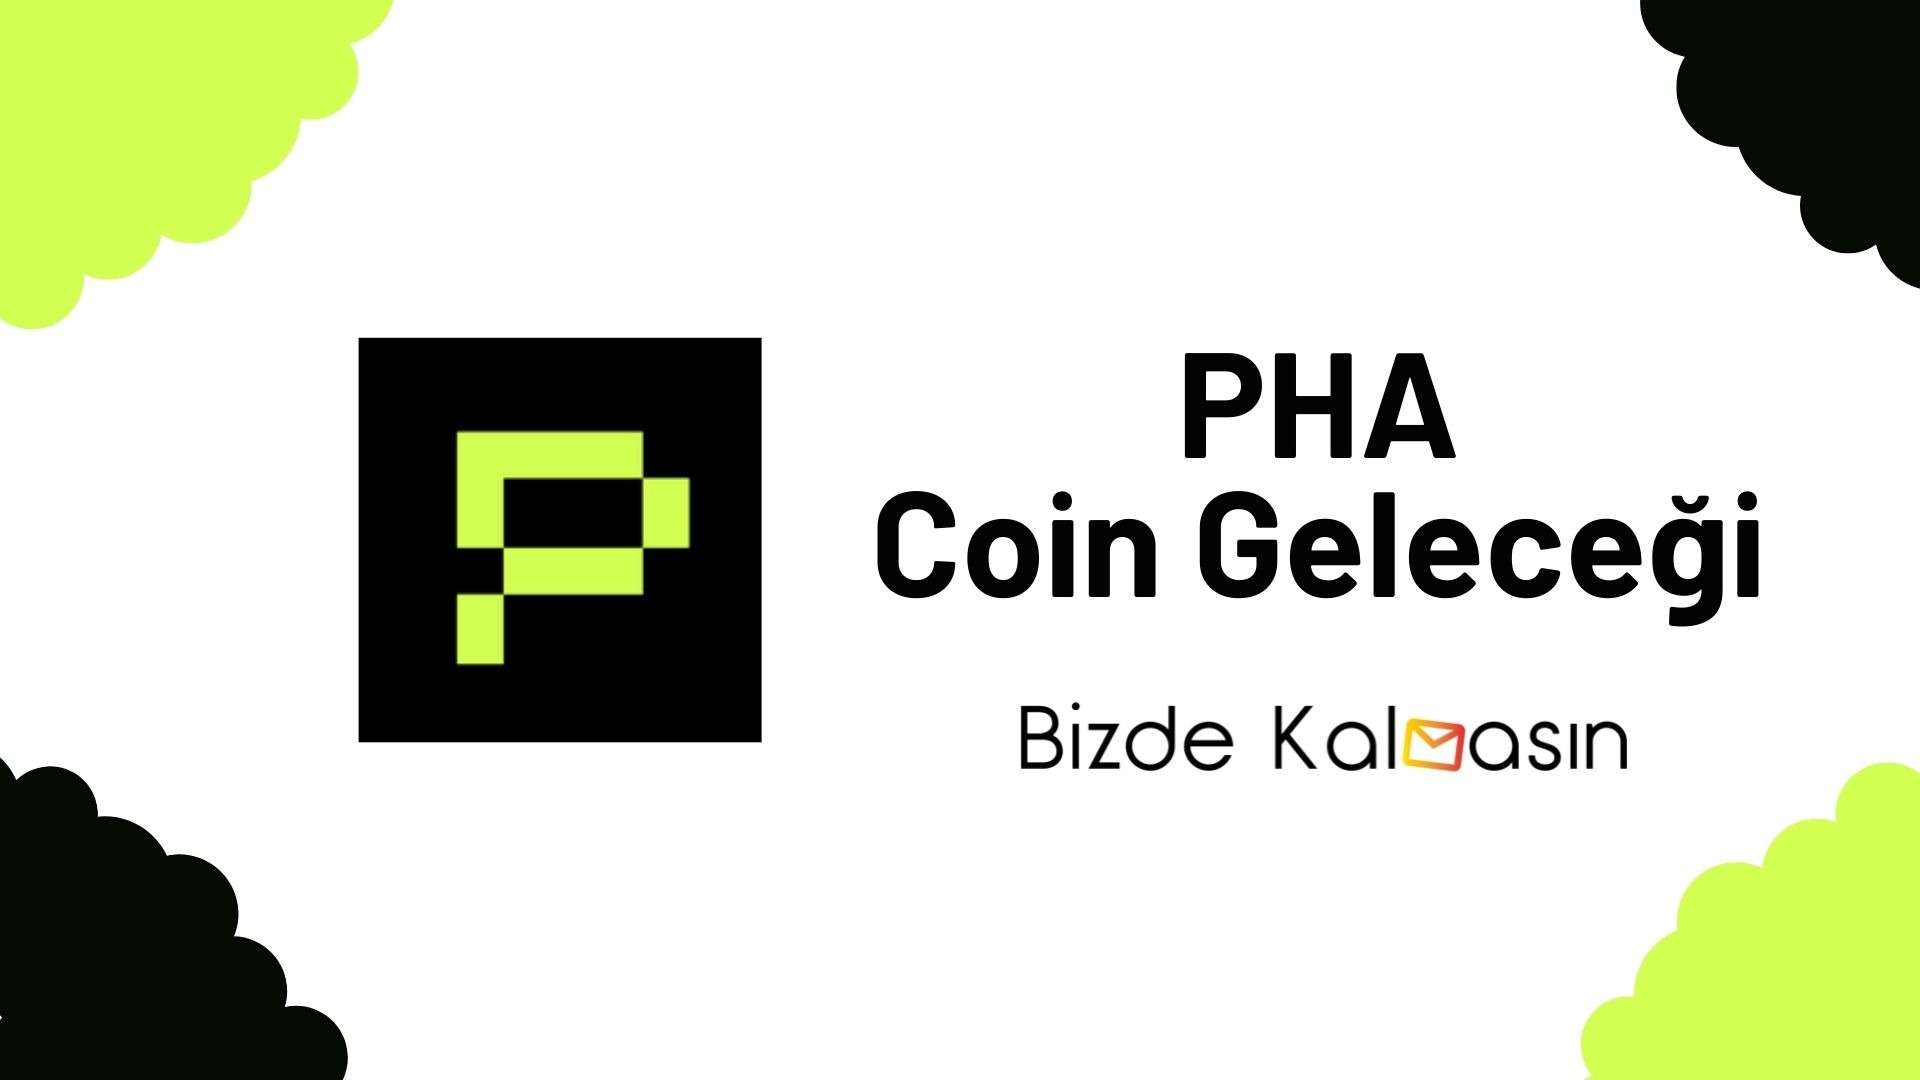 pha coin